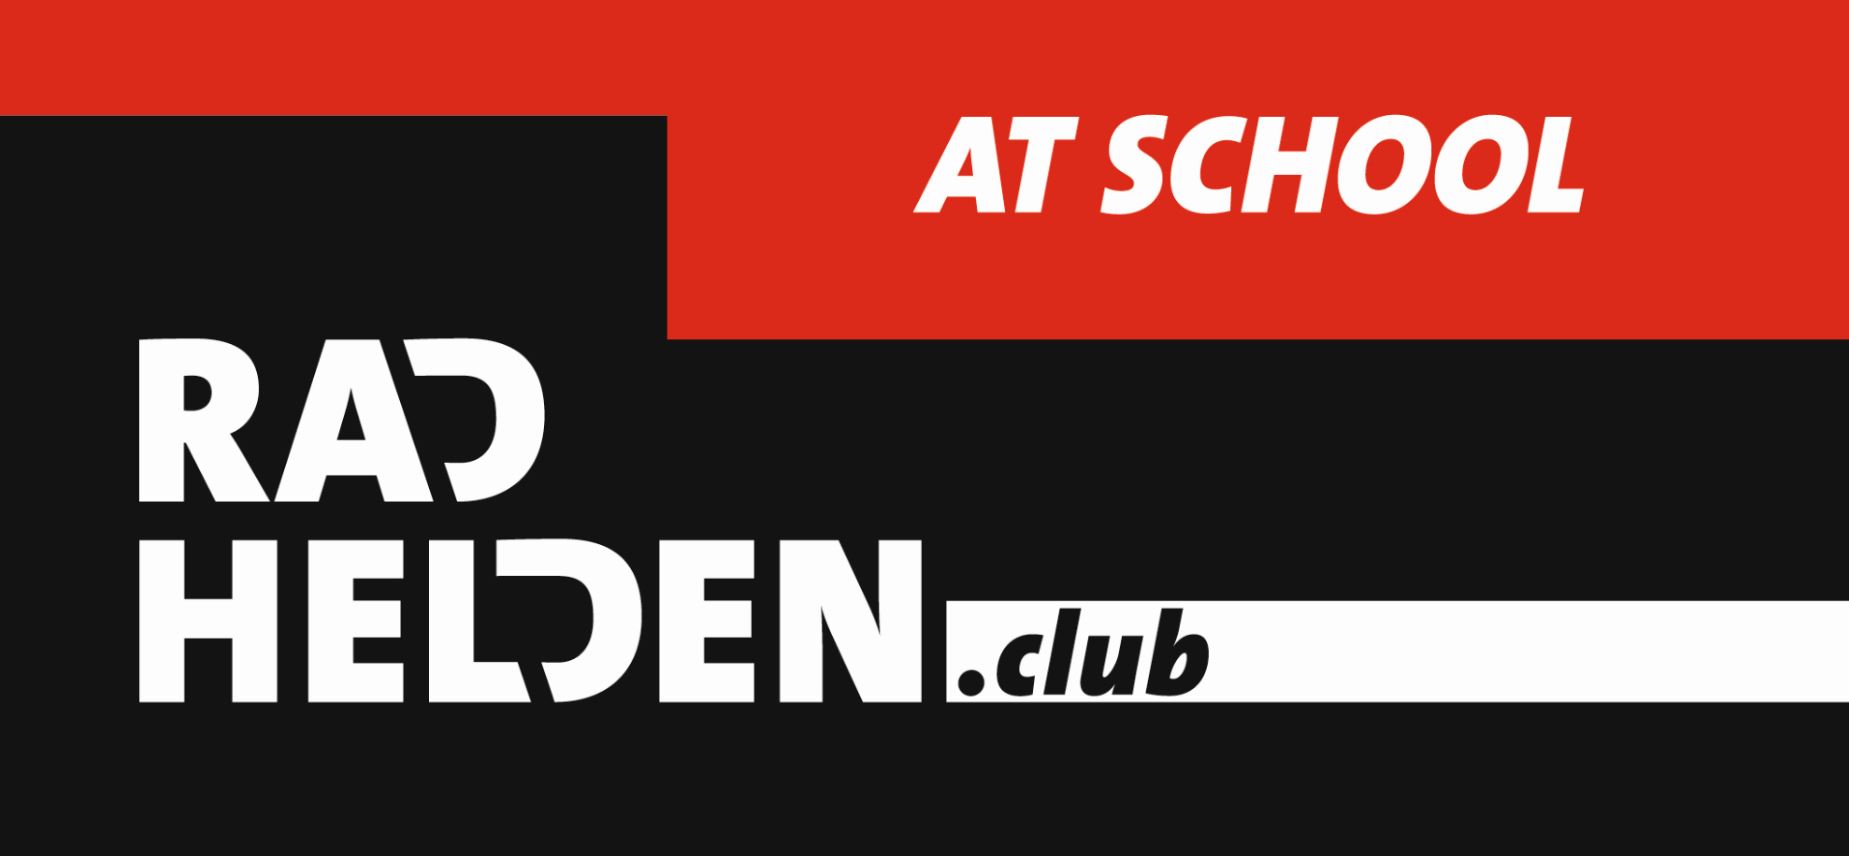 Logo_radhelden_school_klein.jpg